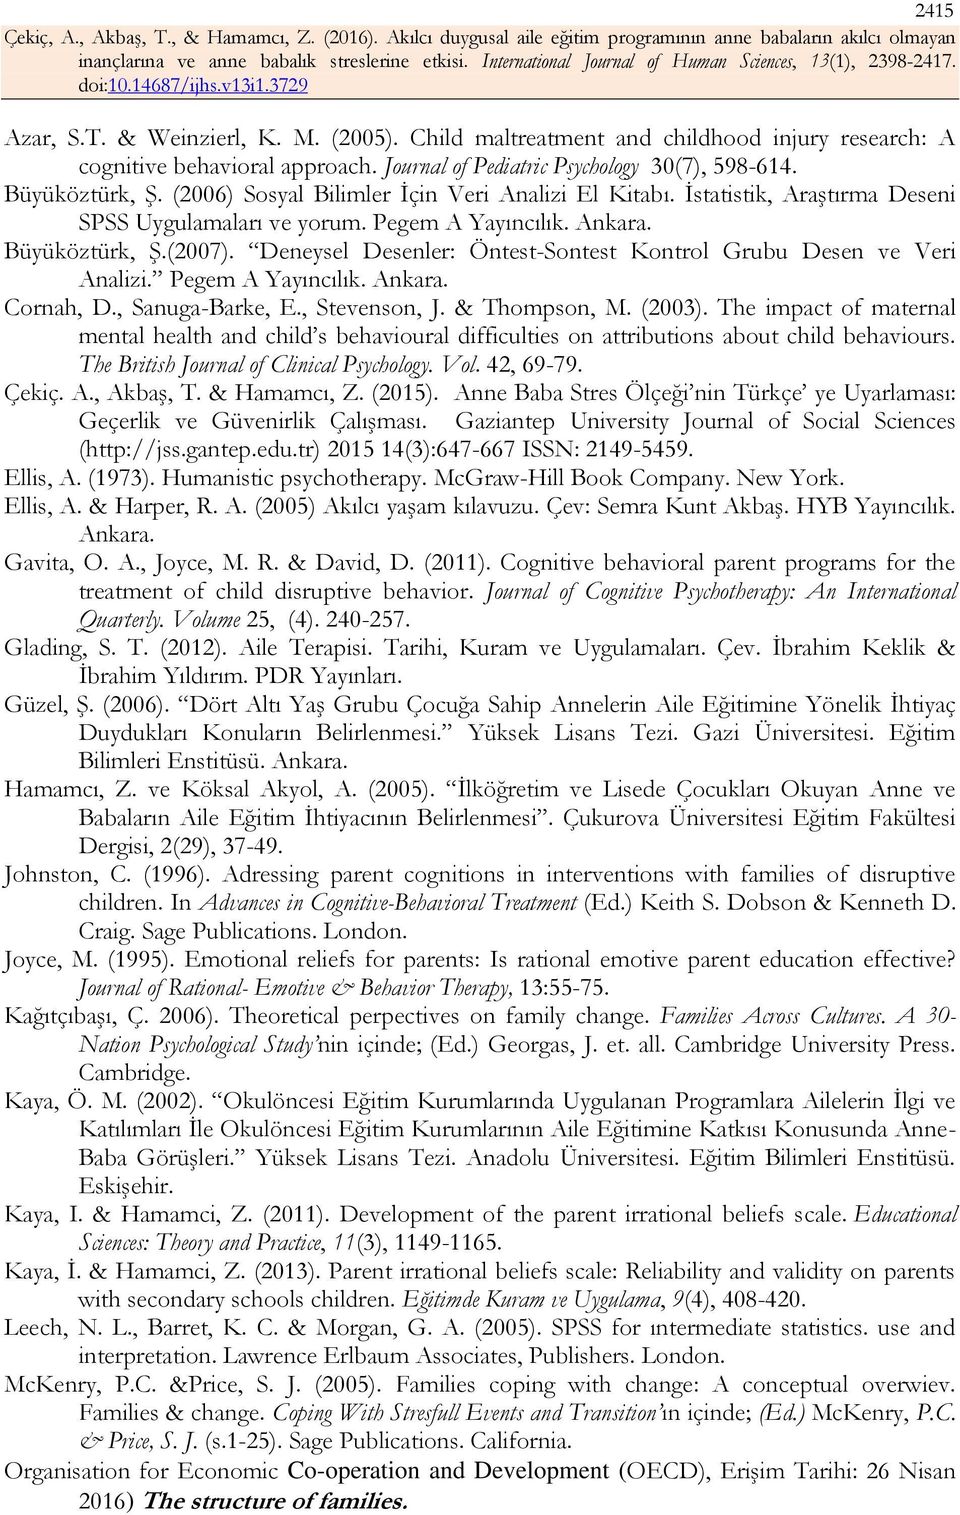 Deneysel Desenler: Öntest-Sontest Kontrol Grubu Desen ve Veri Analizi. Pegem A Yayıncılık. Ankara. Cornah, D., Sanuga-Barke, E., Stevenson, J. & Thompson, M. (2003).